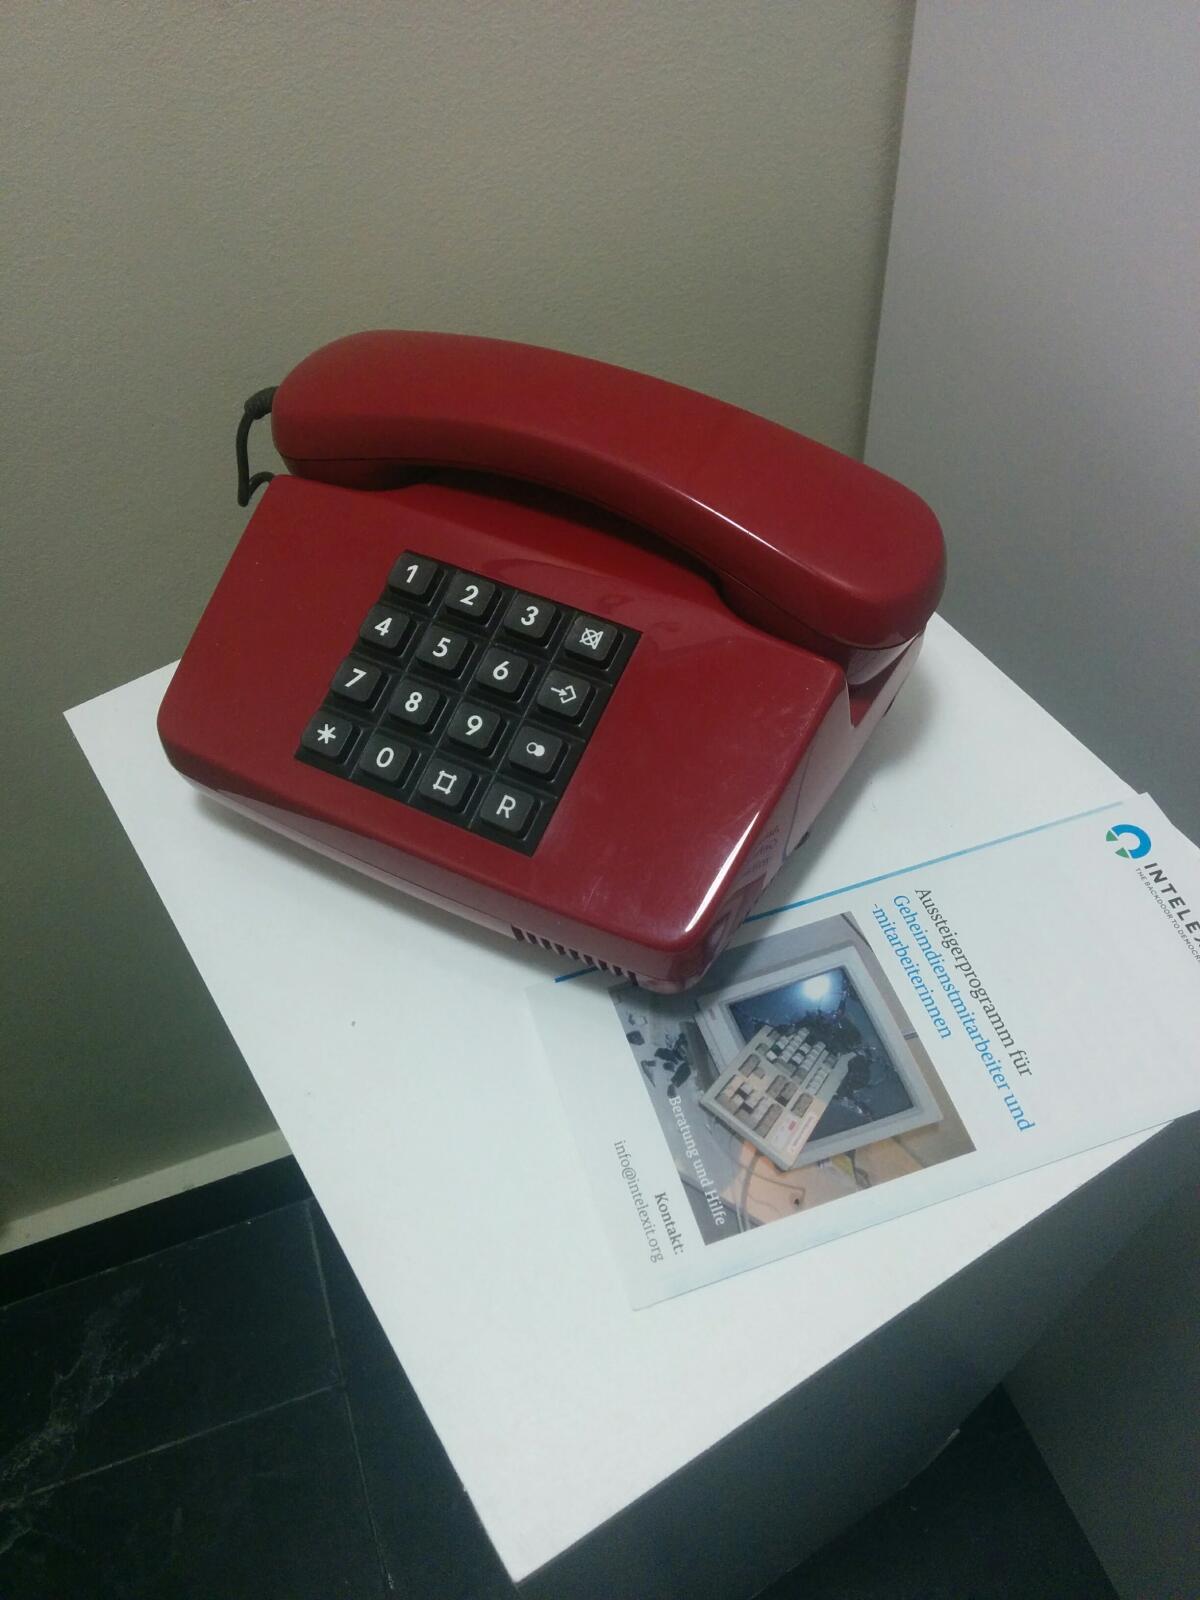 Les téléphones des cabines Intelexit rappellent ceux de la guerre froide.